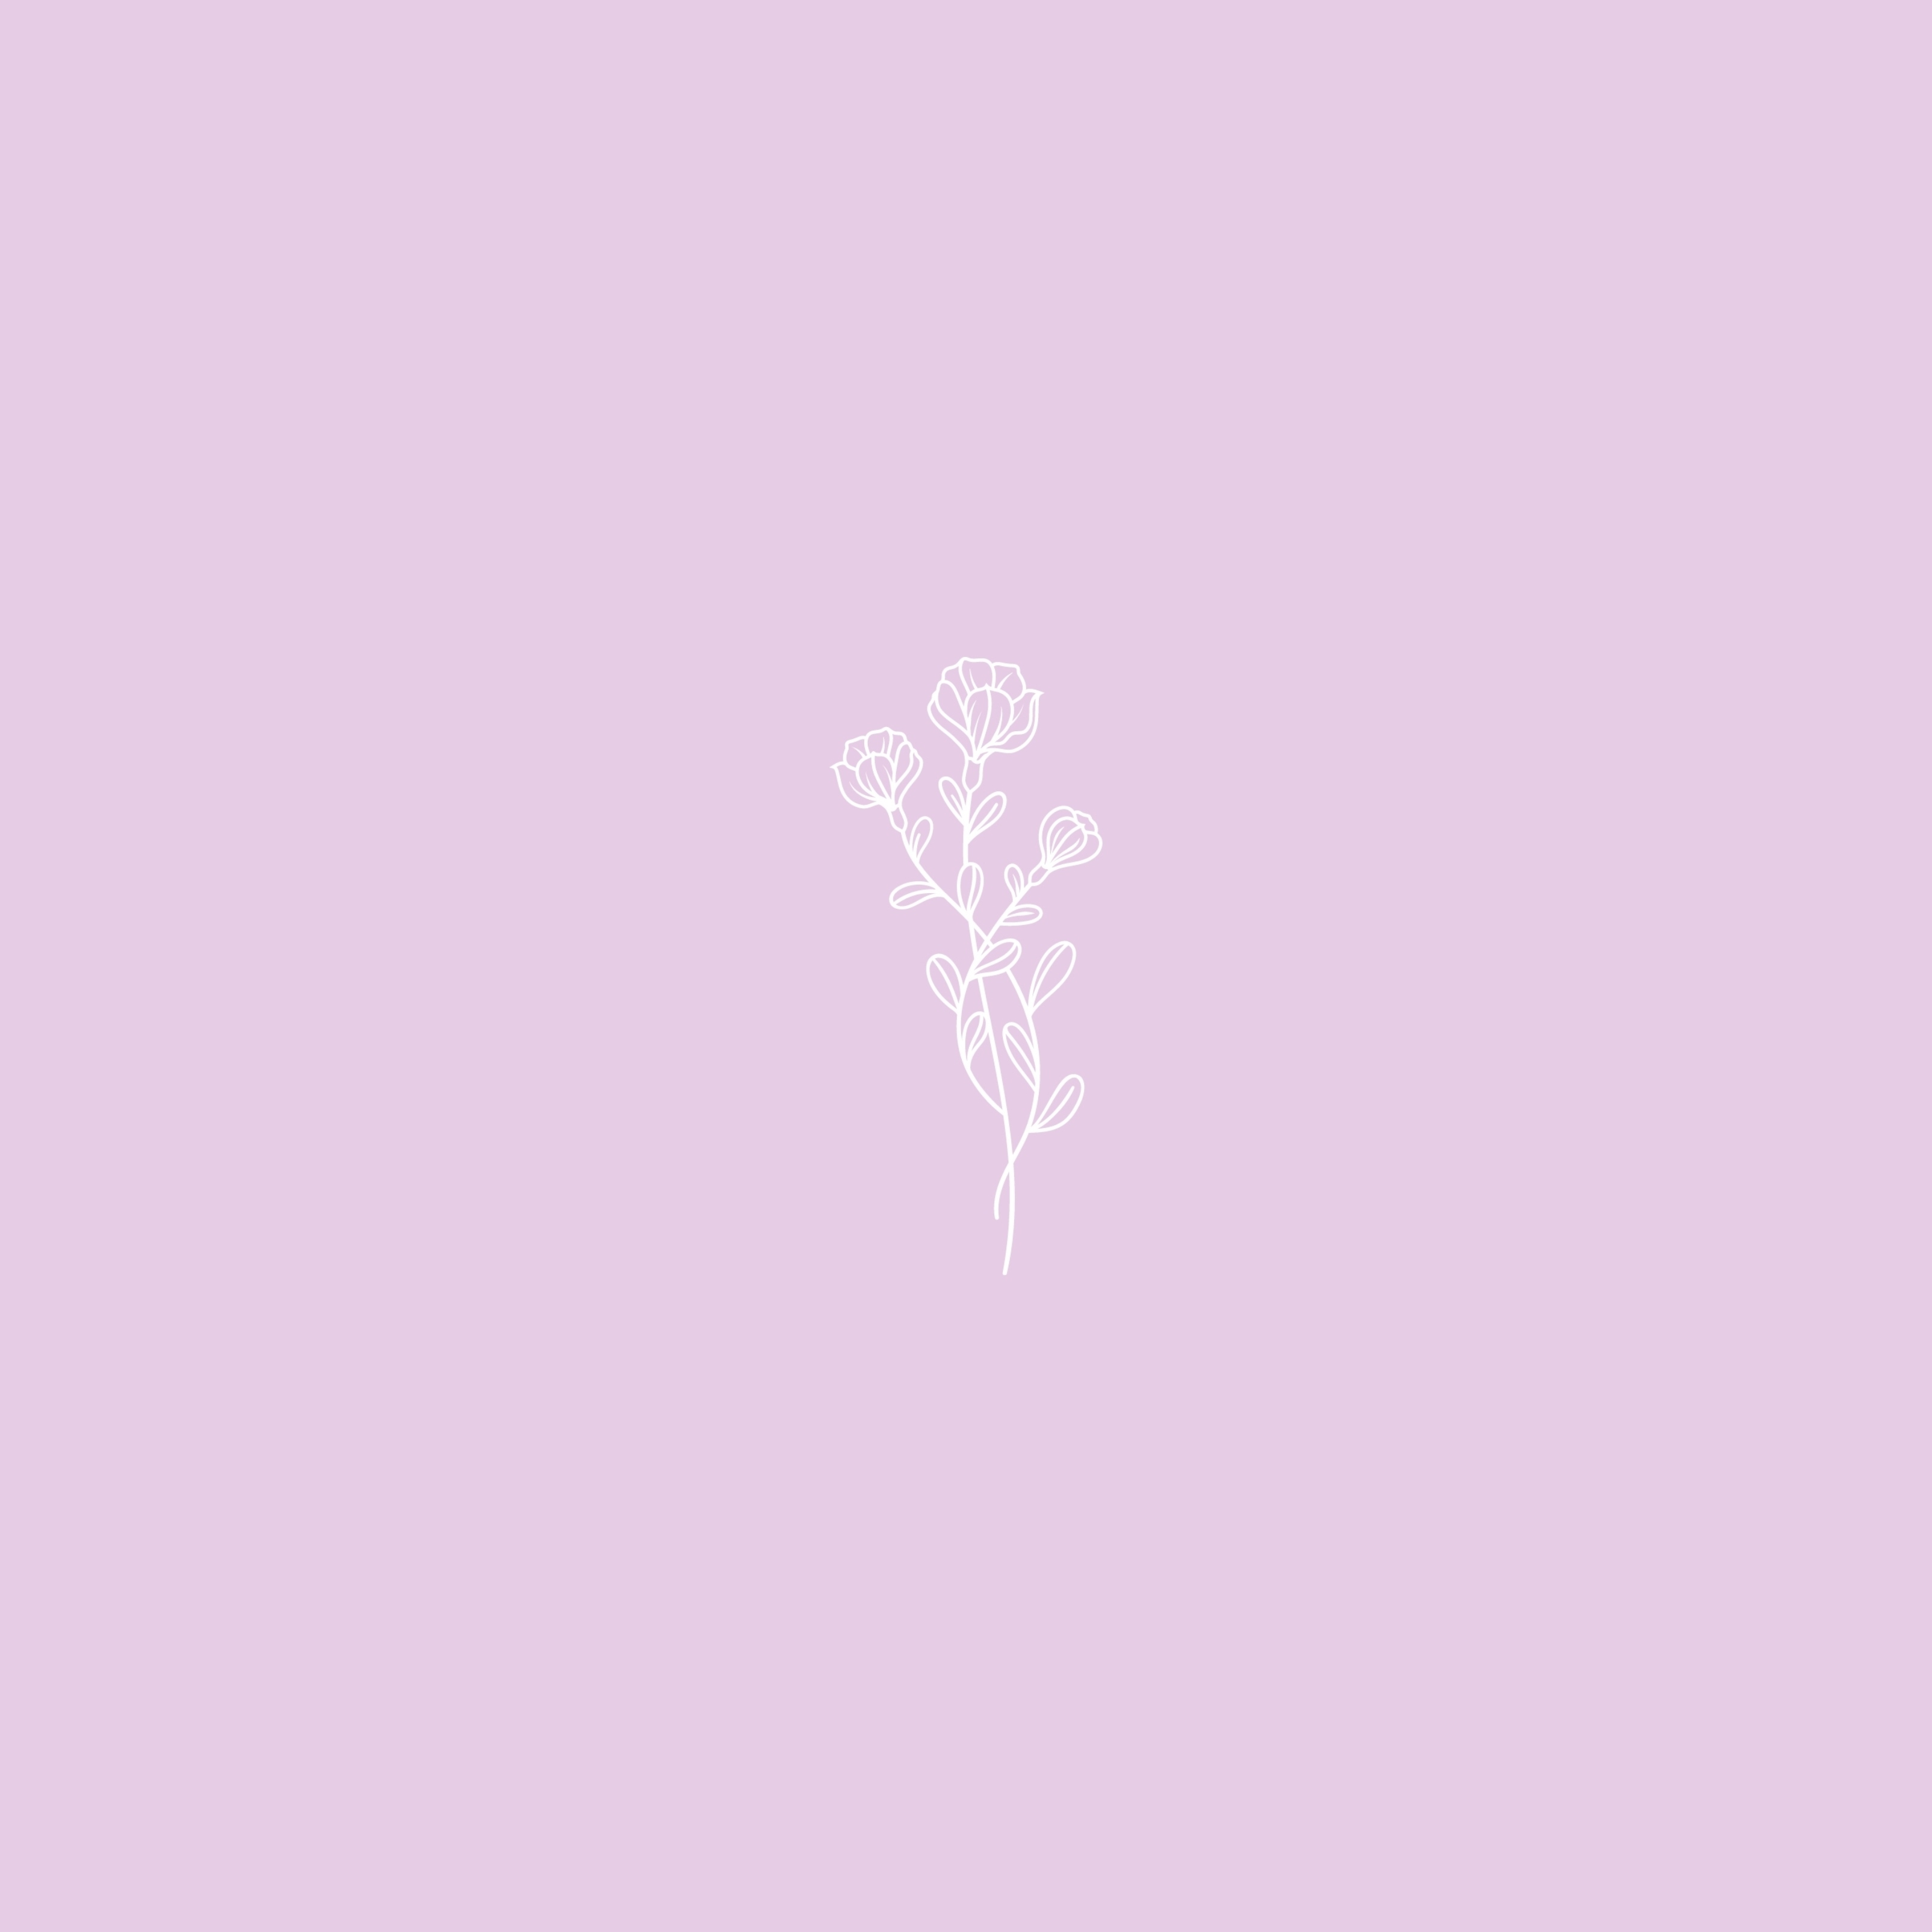 Minimalistic Flower iPad Wallpaper